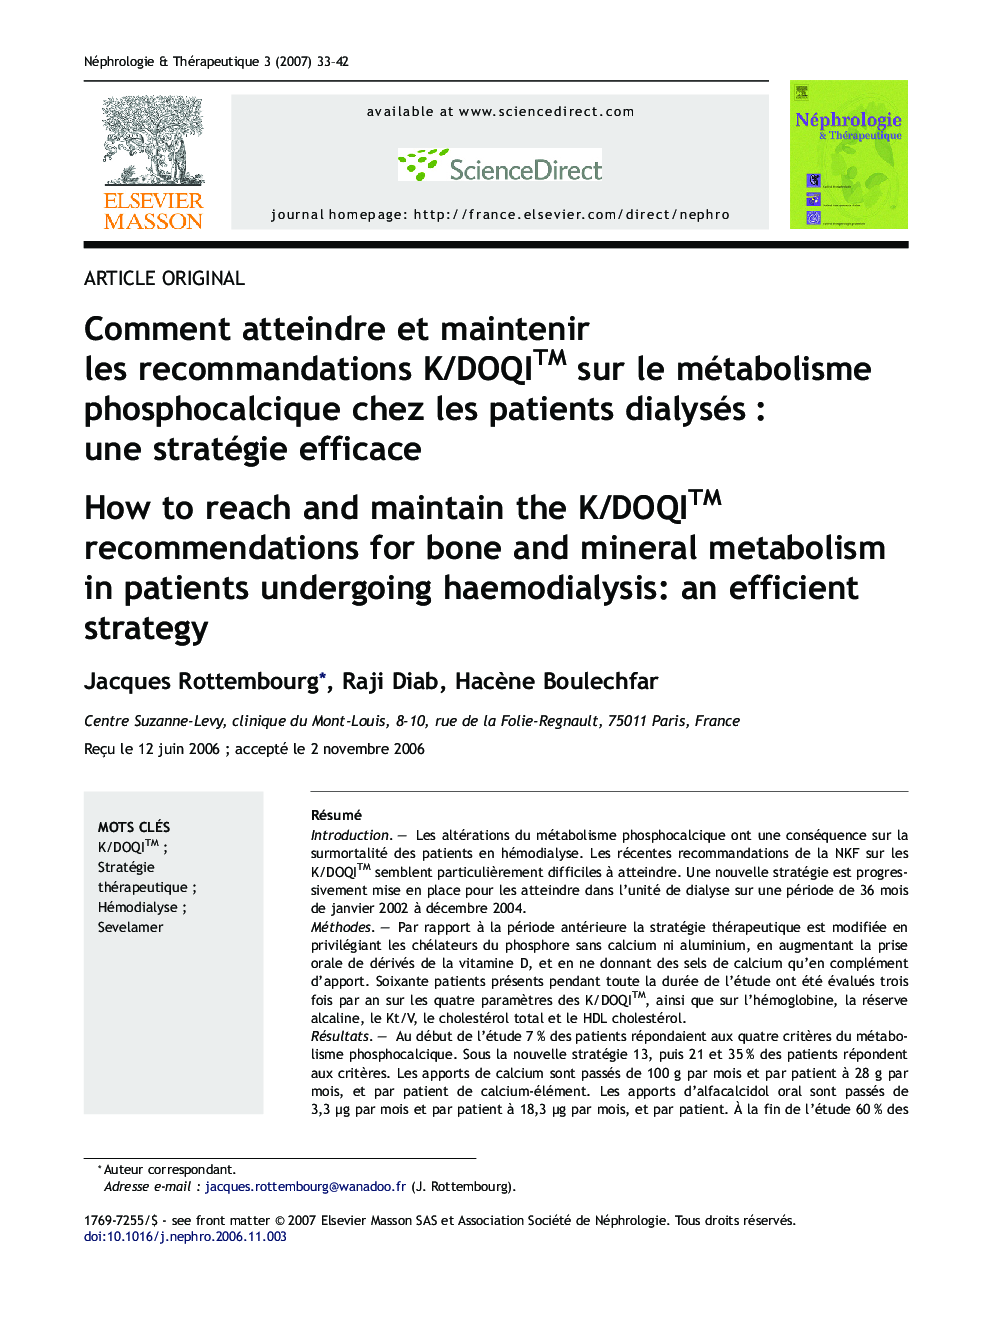 Comment atteindre et maintenir les recommandations K/DOQITM sur le métabolisme phosphocalcique chez les patients dialysés : une stratégie efficace